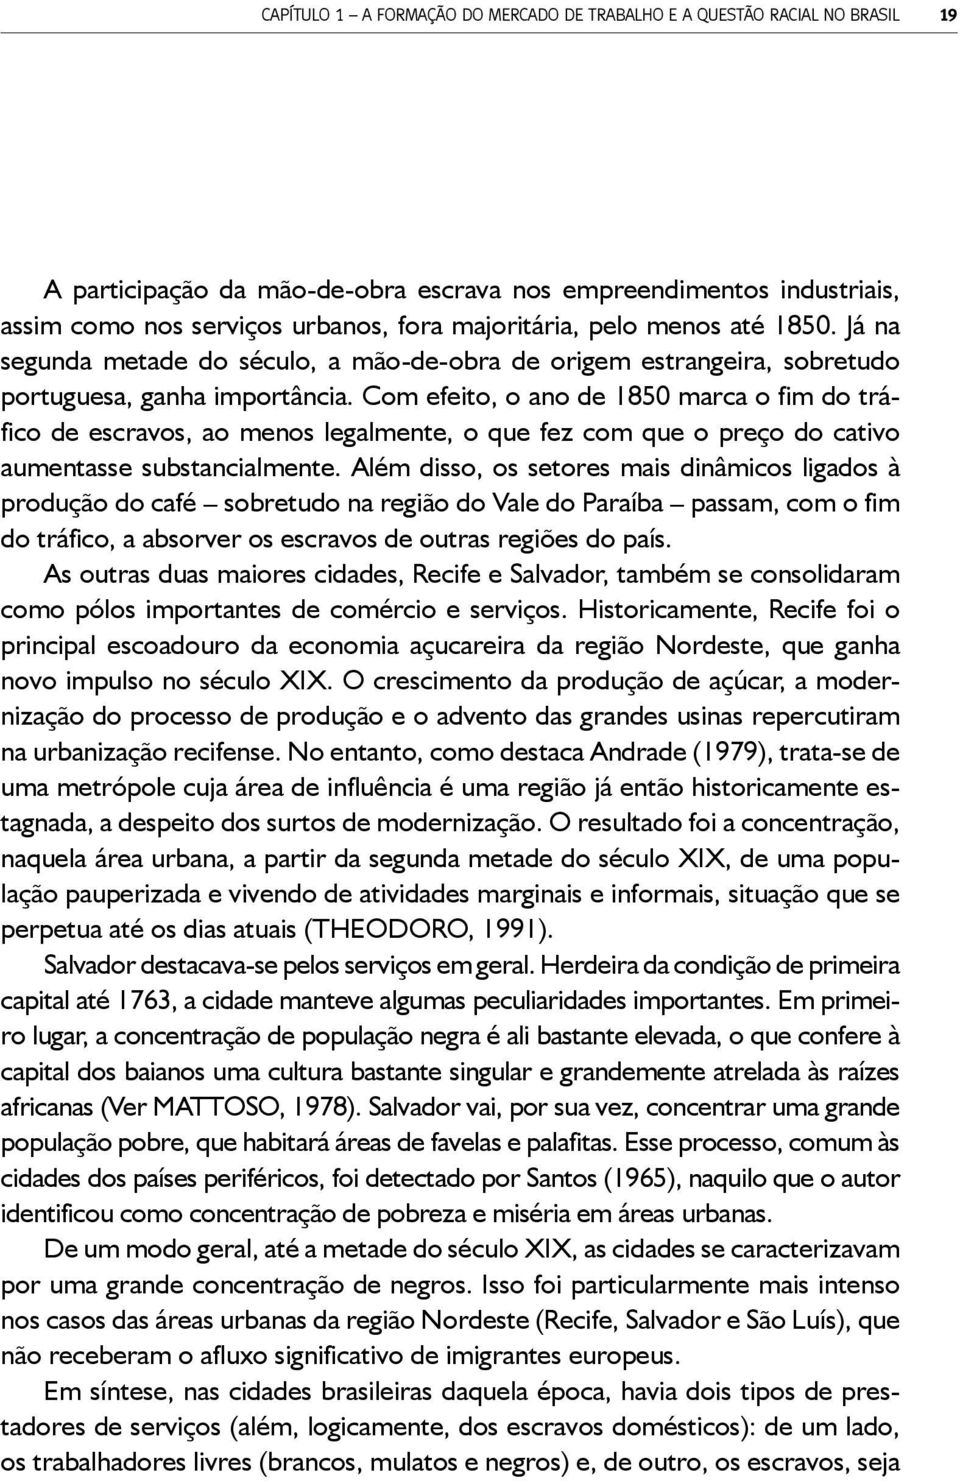 5 Portanto, as grandes áreas urbanas brasileiras, no início do século XIX, apresentavam como base laboral o trabalho escravo e, em menor escala, o trabalho de livres e libertos, assim como o dos